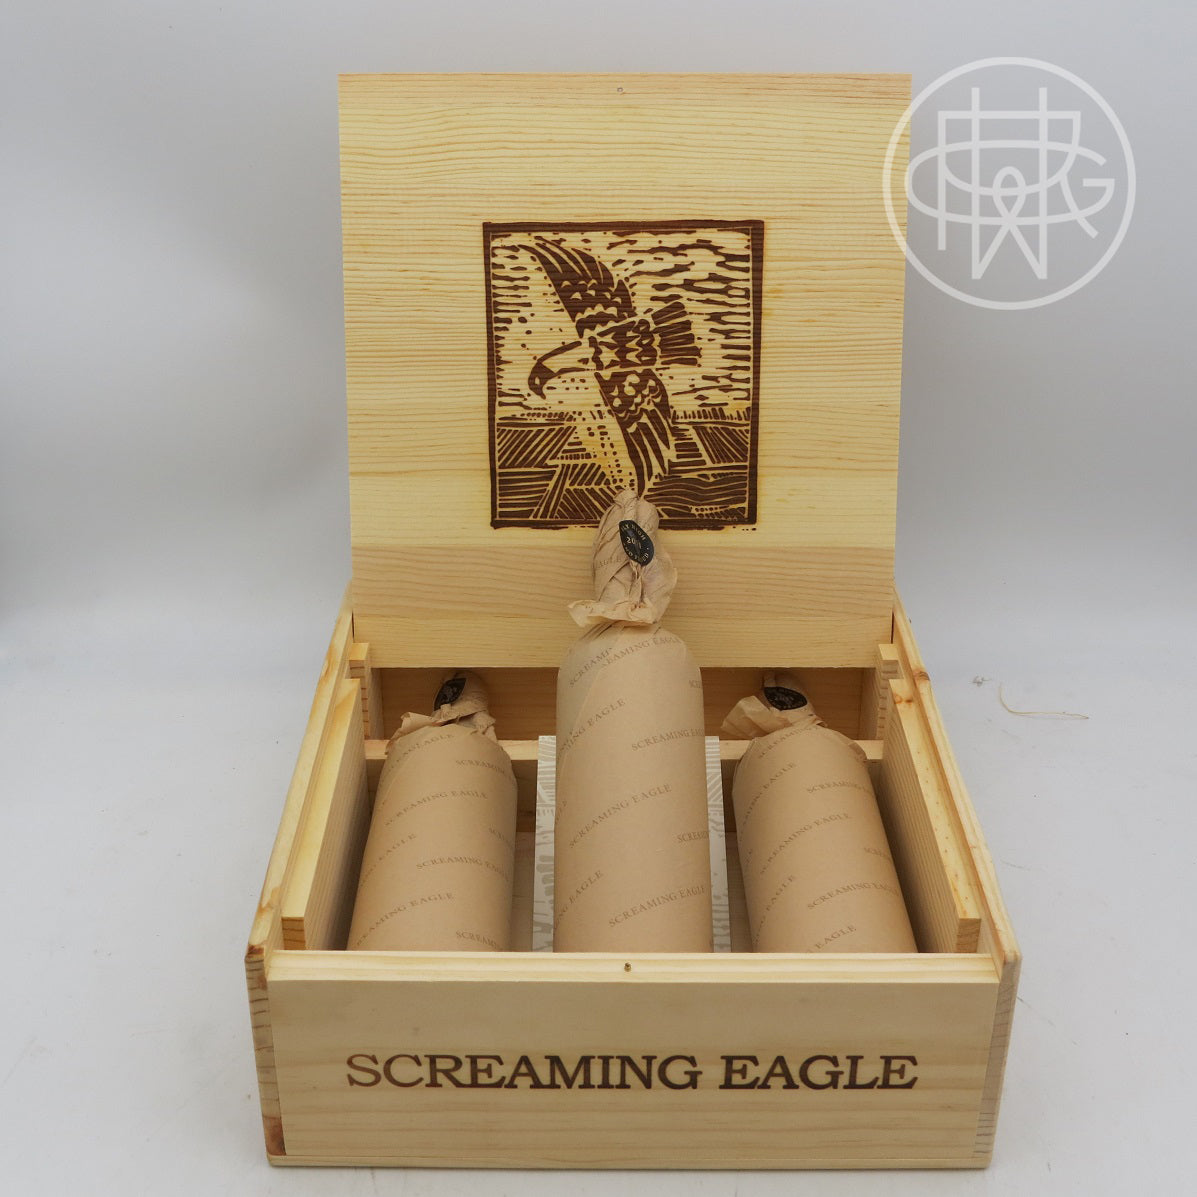 Screaming Eagle 2011 3-Pack OWC 750mL